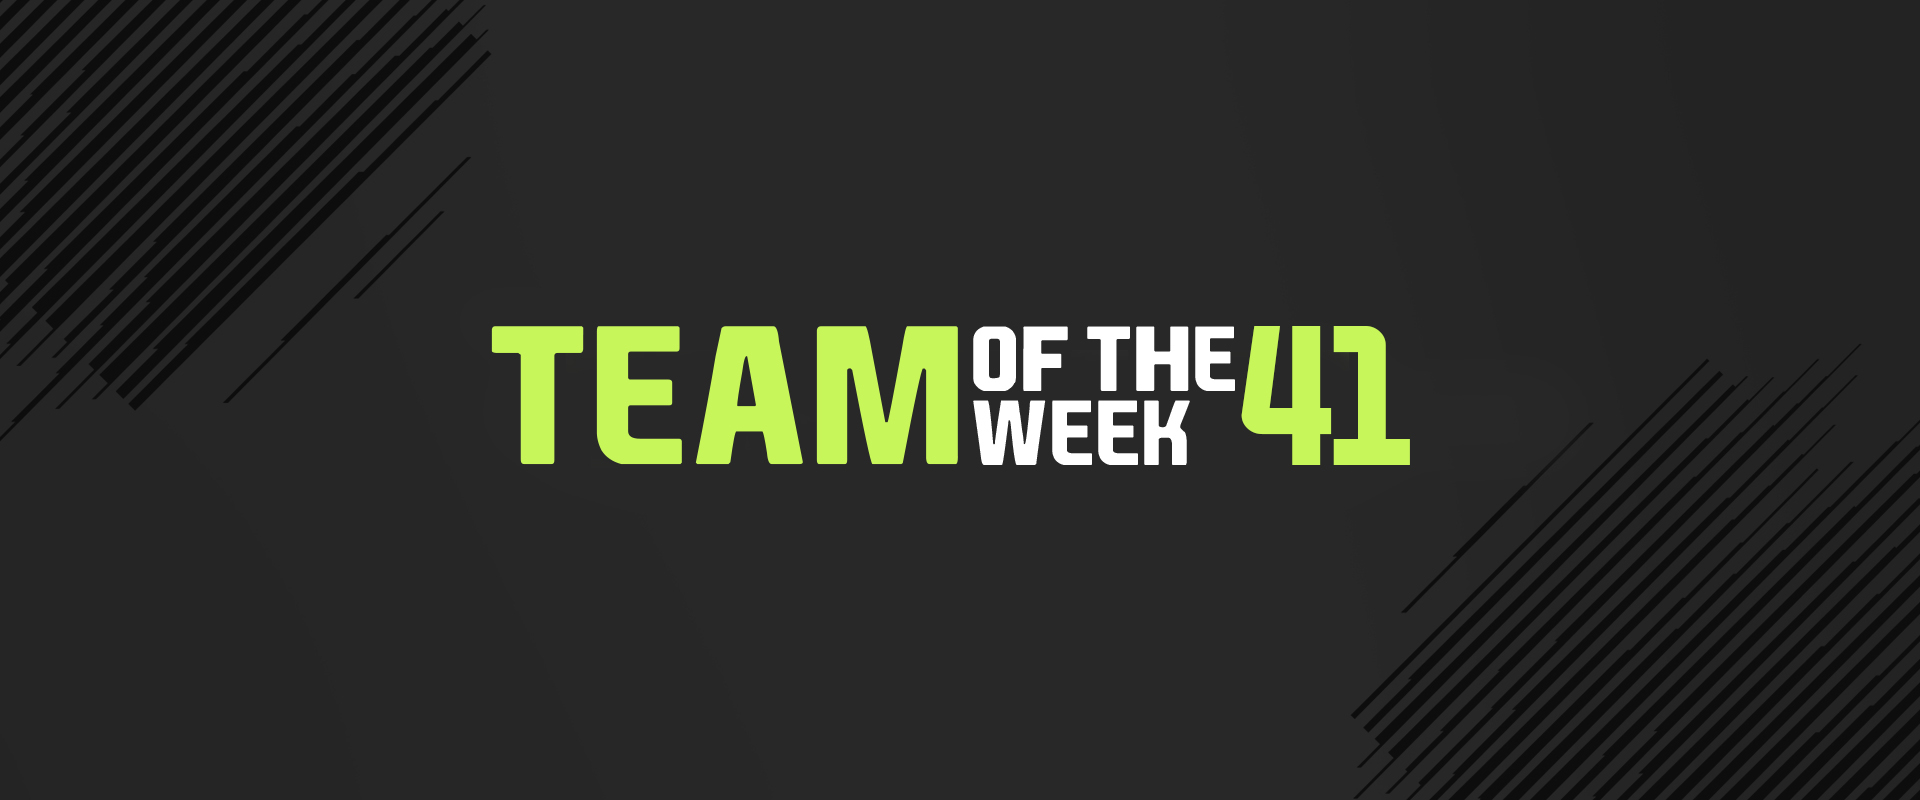 A kapus kapta a legjobb értékelést a 41. Team of the Weekben!